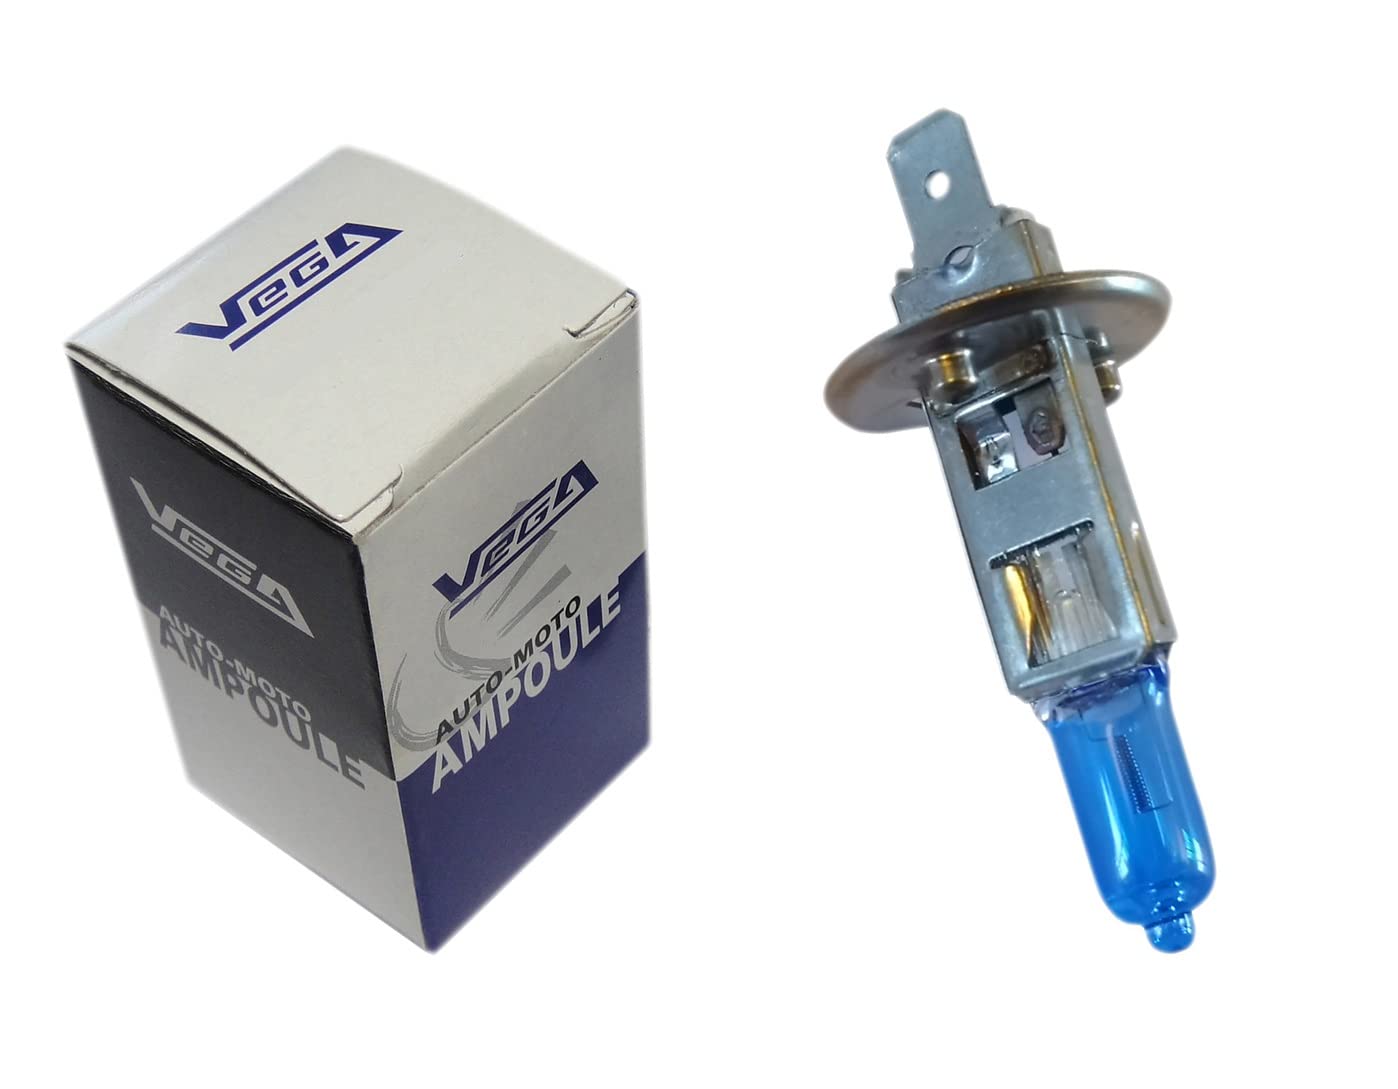 1 Leuchtmittel Vega® Xenon 'Day Light' H1 55 W P14.5s Tageslicht Super White, französische Marke, 12 V von Vega